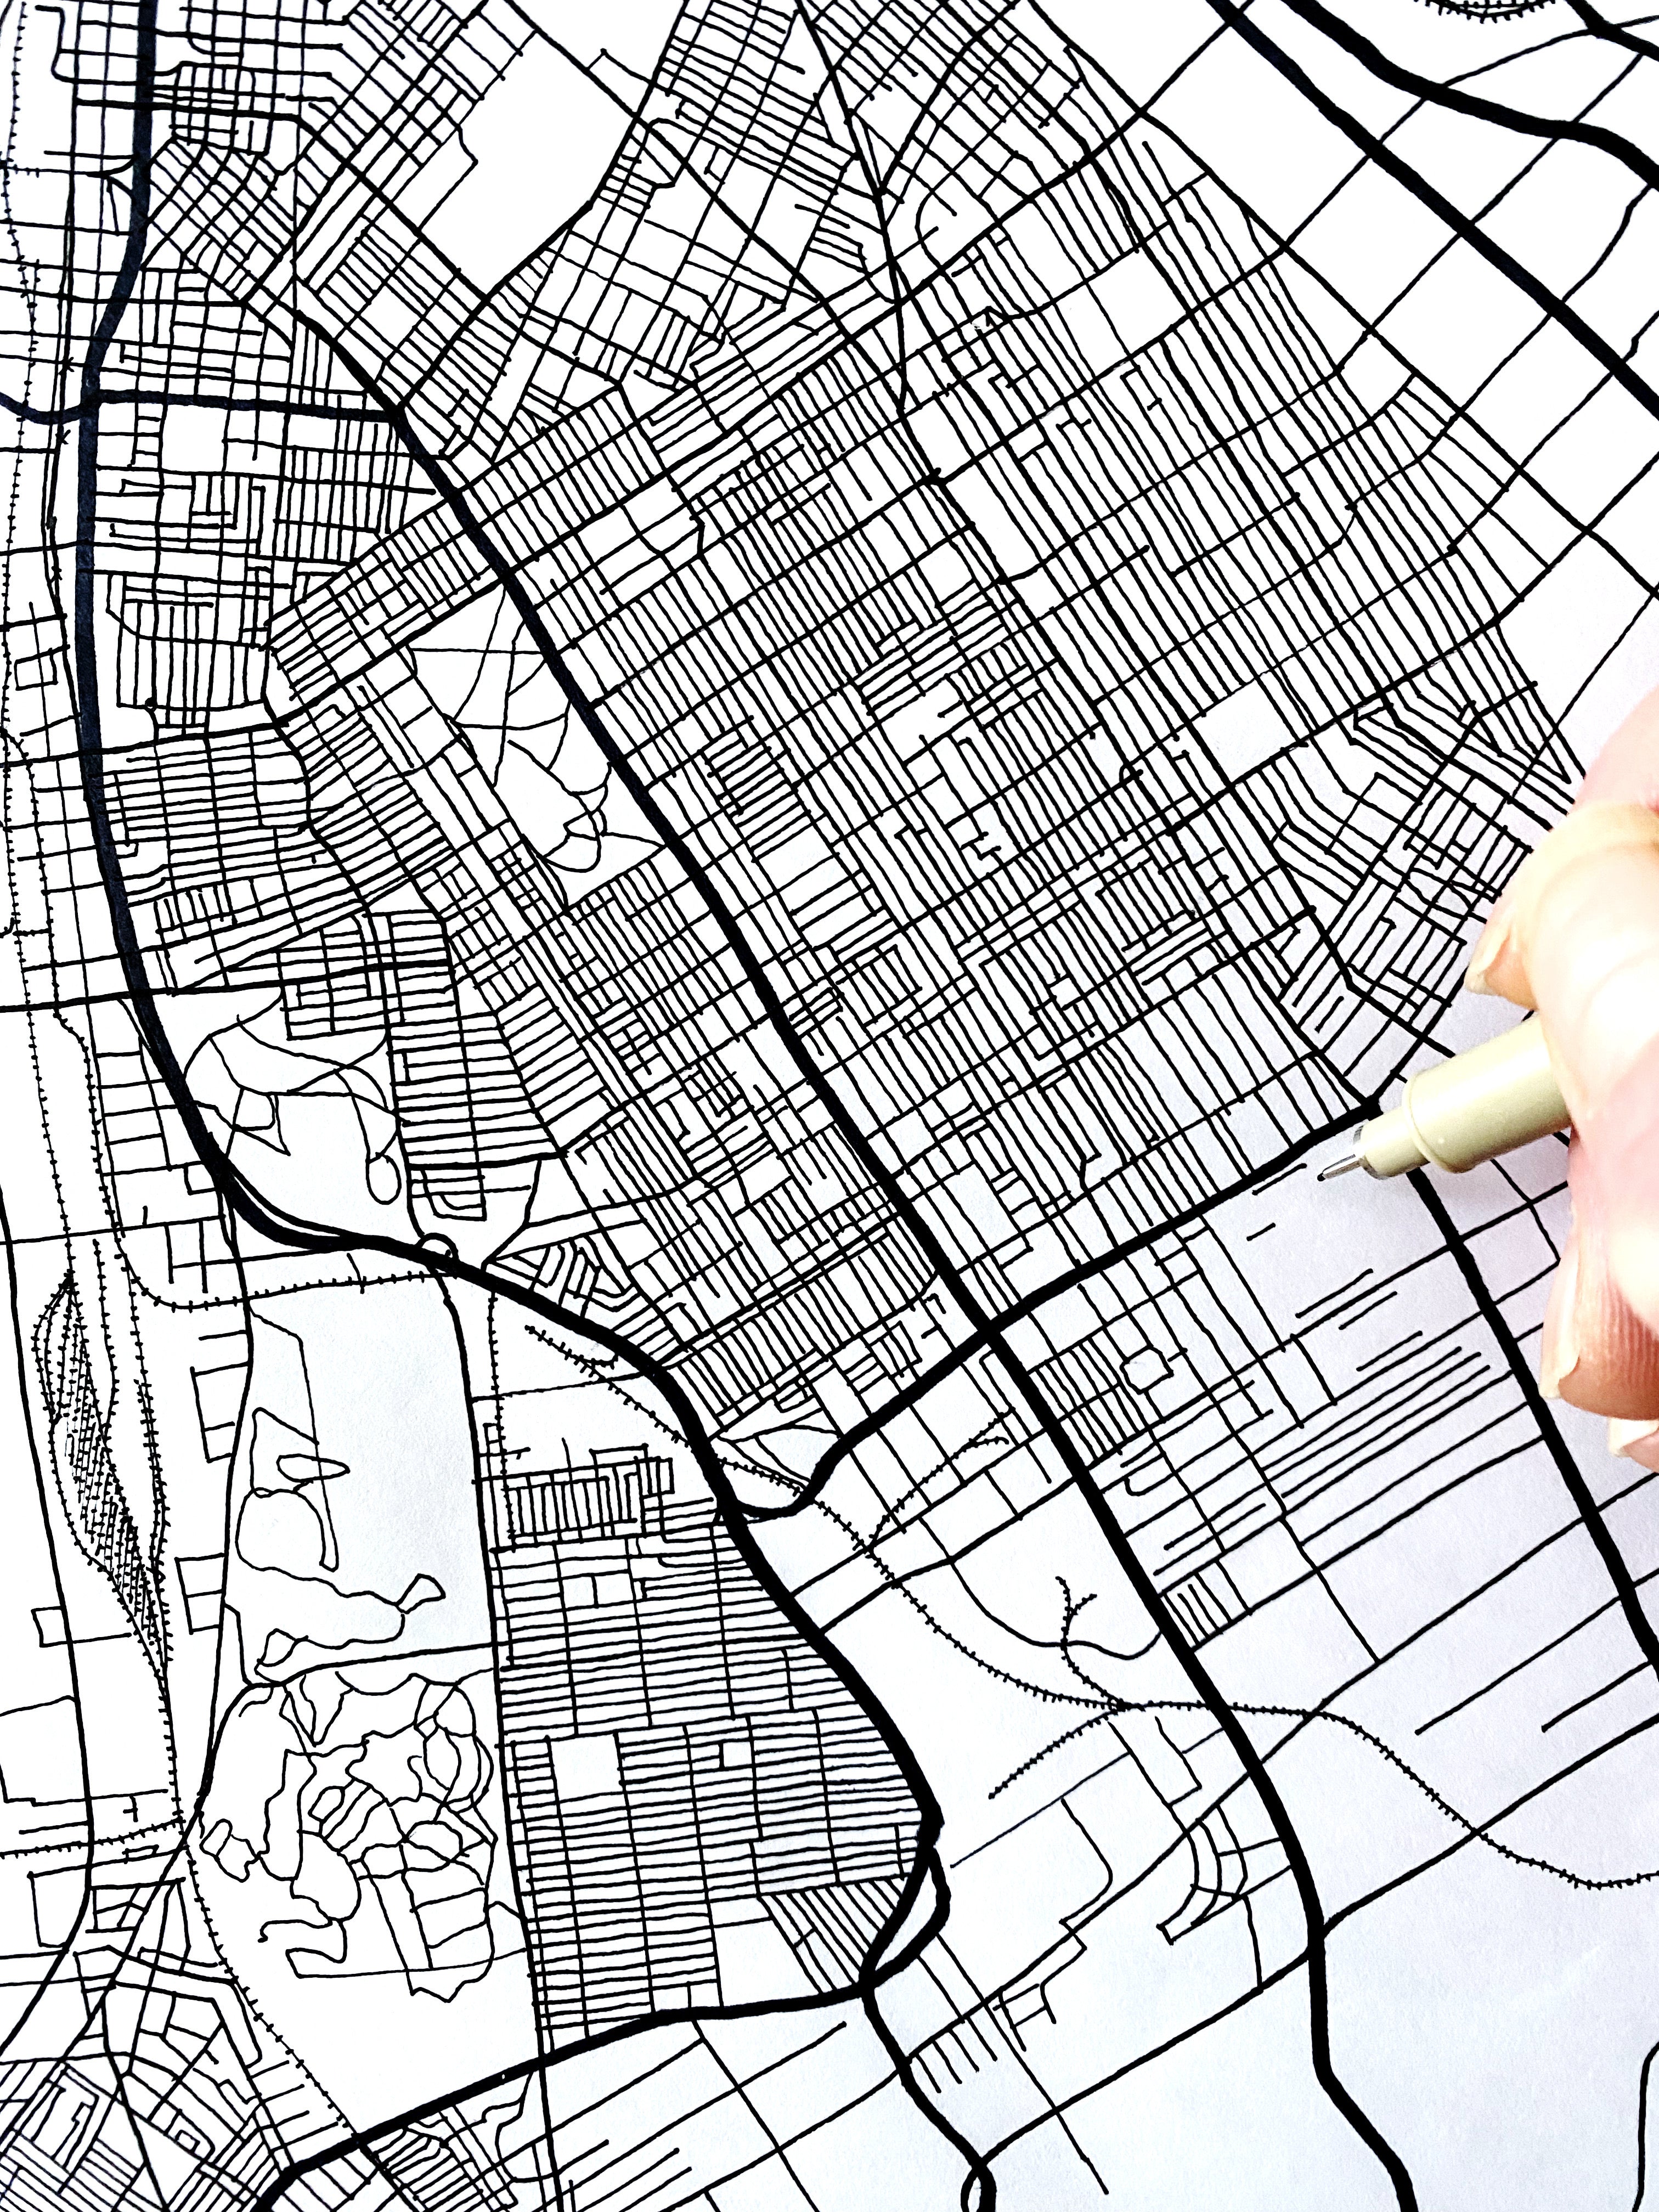 ST. LOUIS Watercolor City Blocks Map: ORIGINAL PAINTING